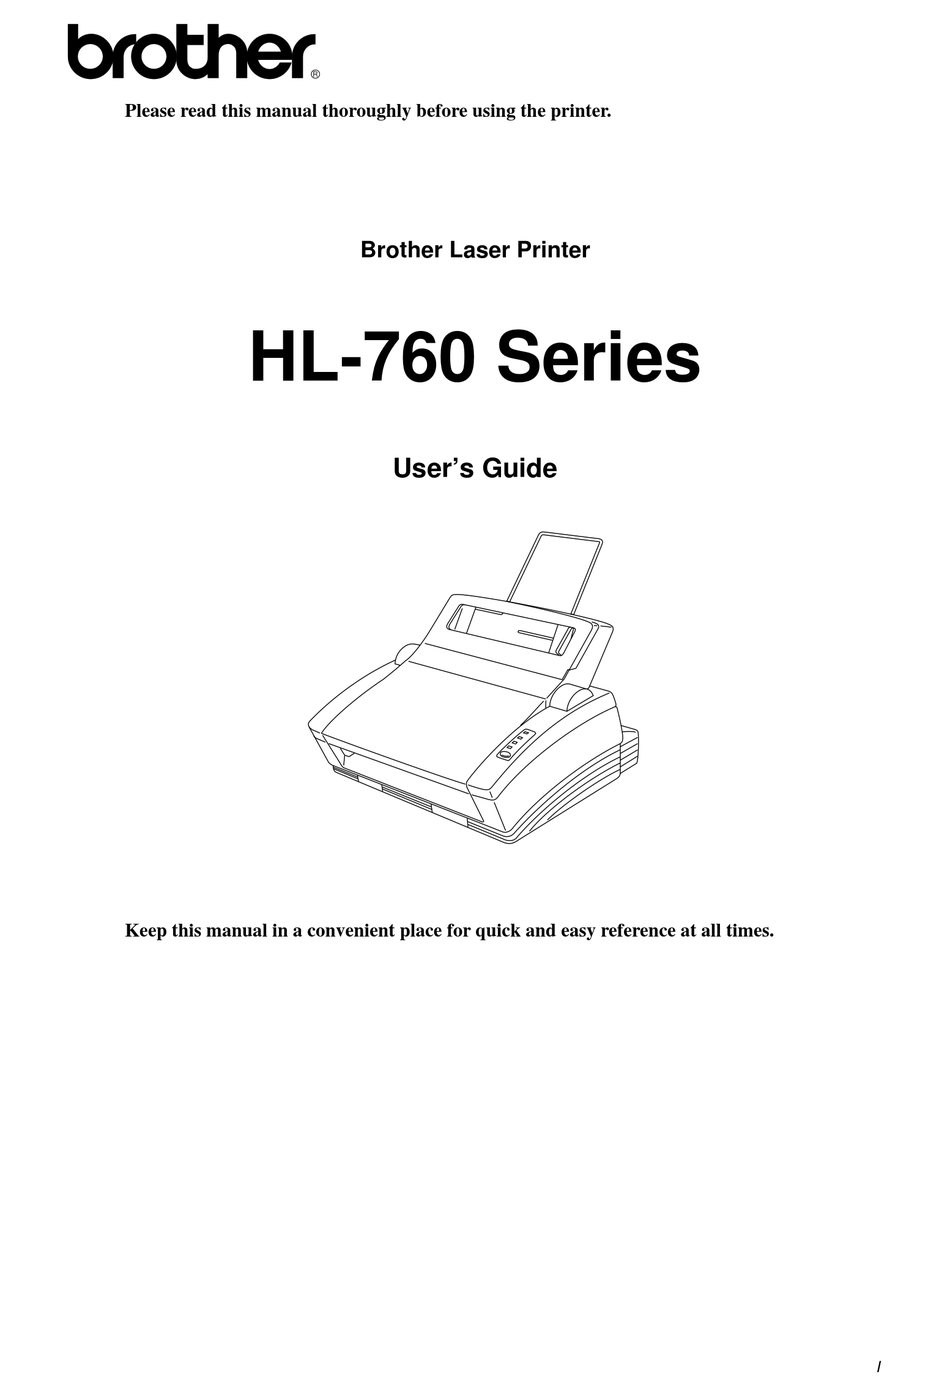 BROTHER HL-760 SERIES PRINTER USER MANUAL | ManualsLib